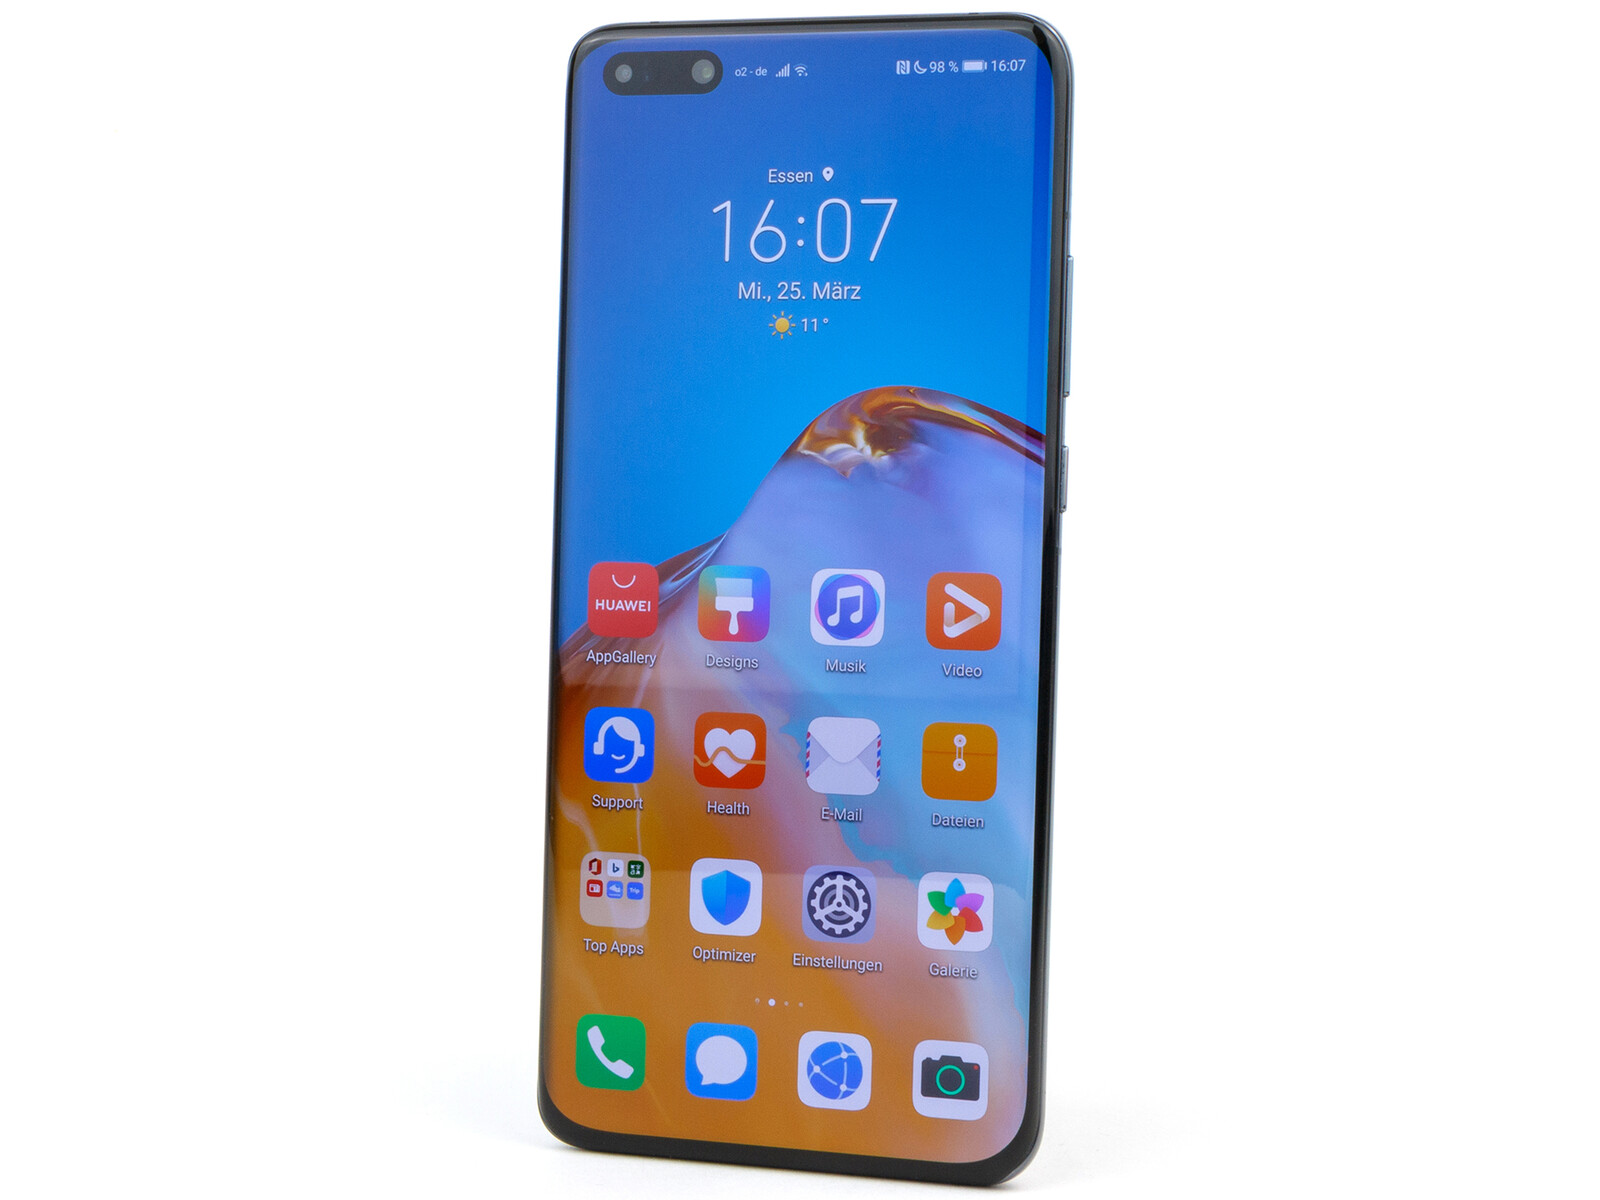 Đánh giá Huawei P40 Pro: Đừng bỏ lỡ cơ hội khám phá đánh giá chi tiết về chiếc điện thoại Huawei P40 Pro đến từ thương hiệu hàng đầu. Với thiết kế sang trọng, màn hình lớn và camera siêu phẩm, chiếc điện thoại này chắc chắn sẽ không làm bạn thất vọng. Hãy xem ảnh liên quan để tìm hiểu thêm.